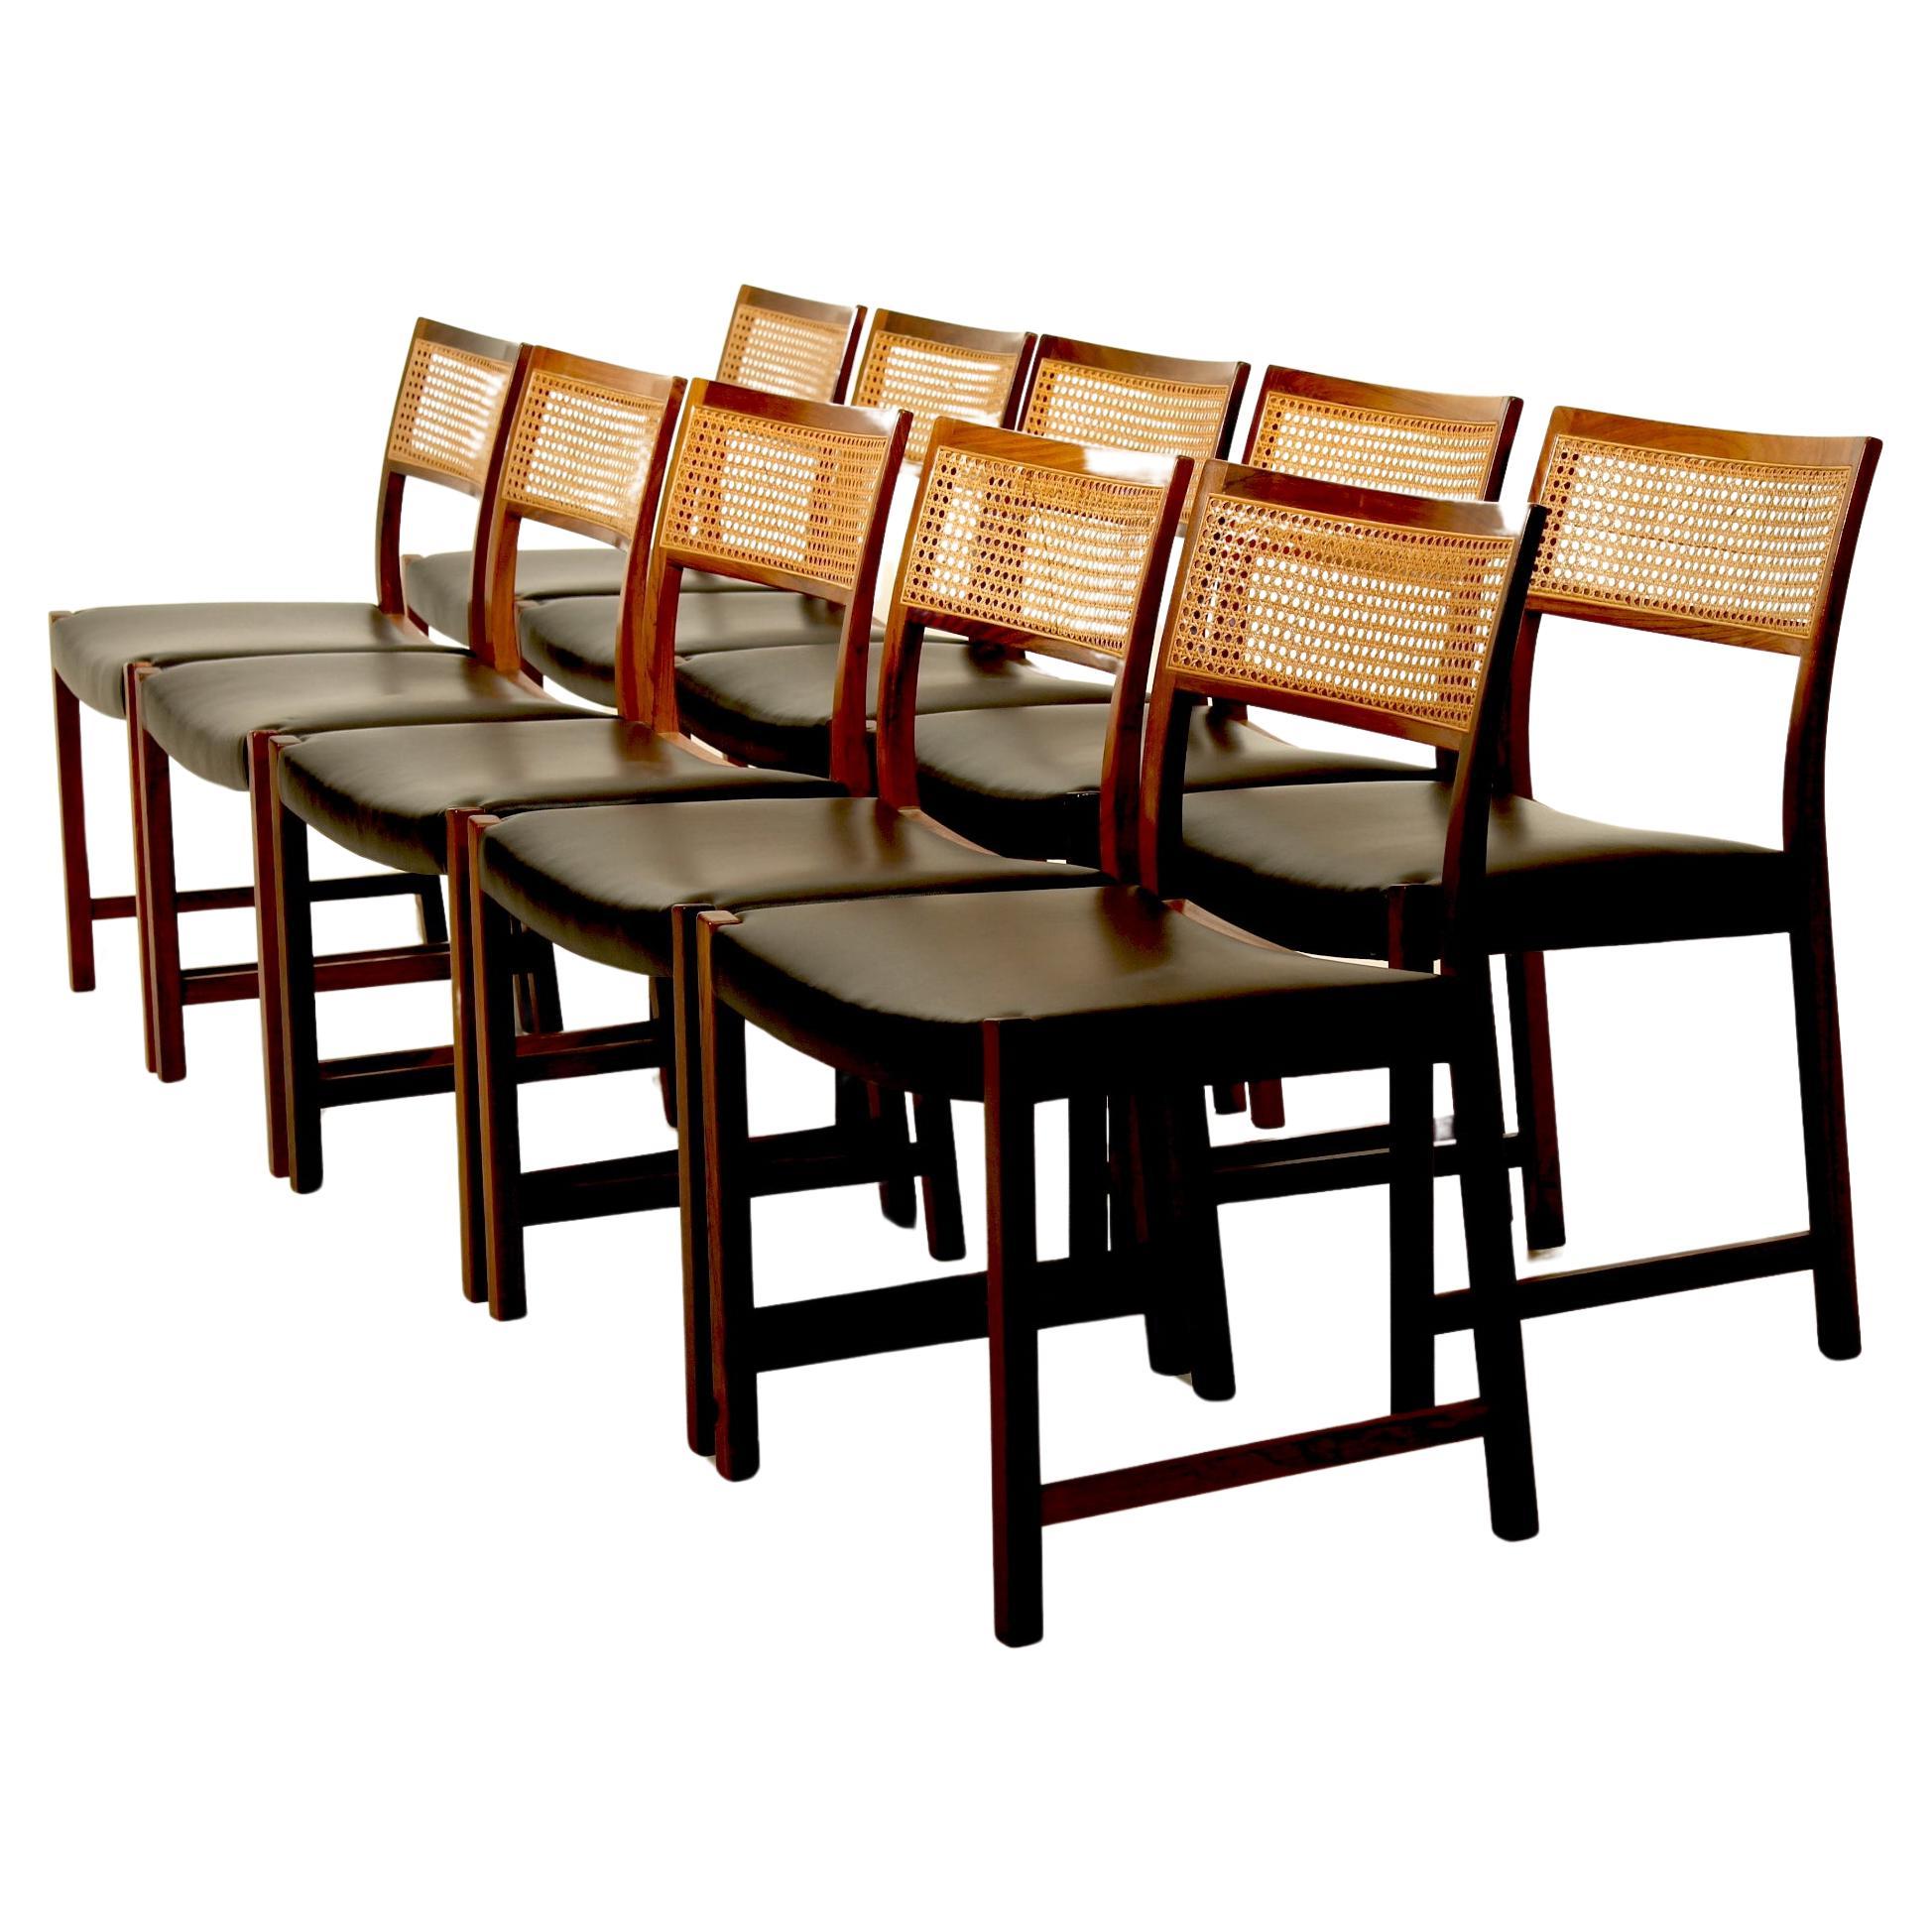 Set of 10 original vintage side chairs by Illum Vikkelsø, Denmark. For Sale